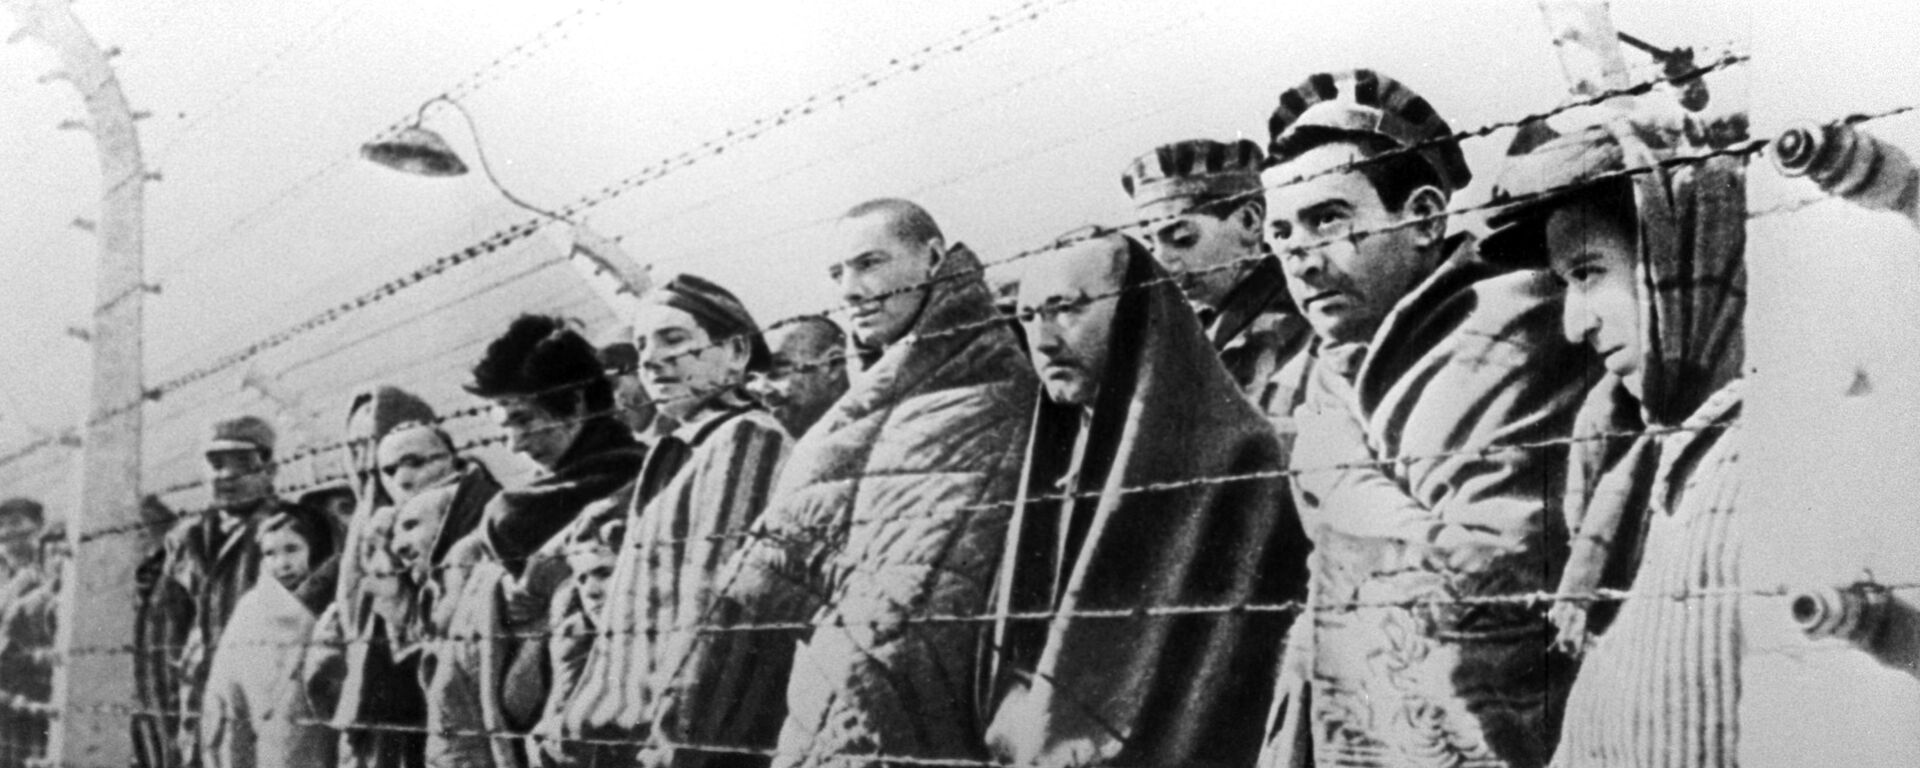 Узники концентрационного лагеря Освенцим, освобожденные войсками Красной армии в январе 1945 года - Sputnik Ўзбекистон, 1920, 04.02.2020